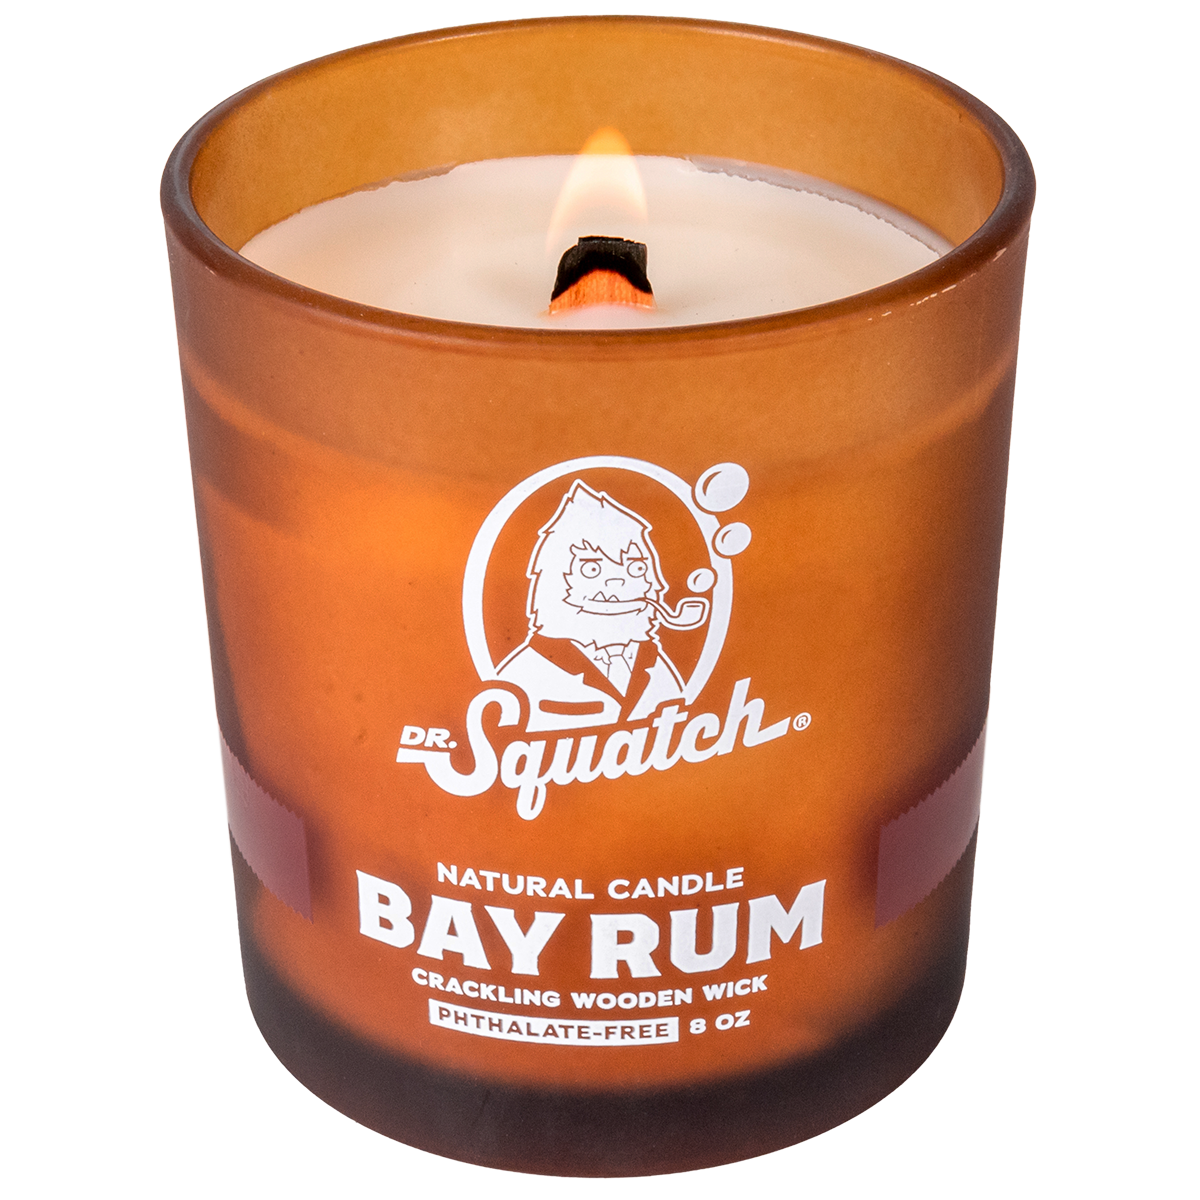 Dr. Squatch: NEW candle bundles